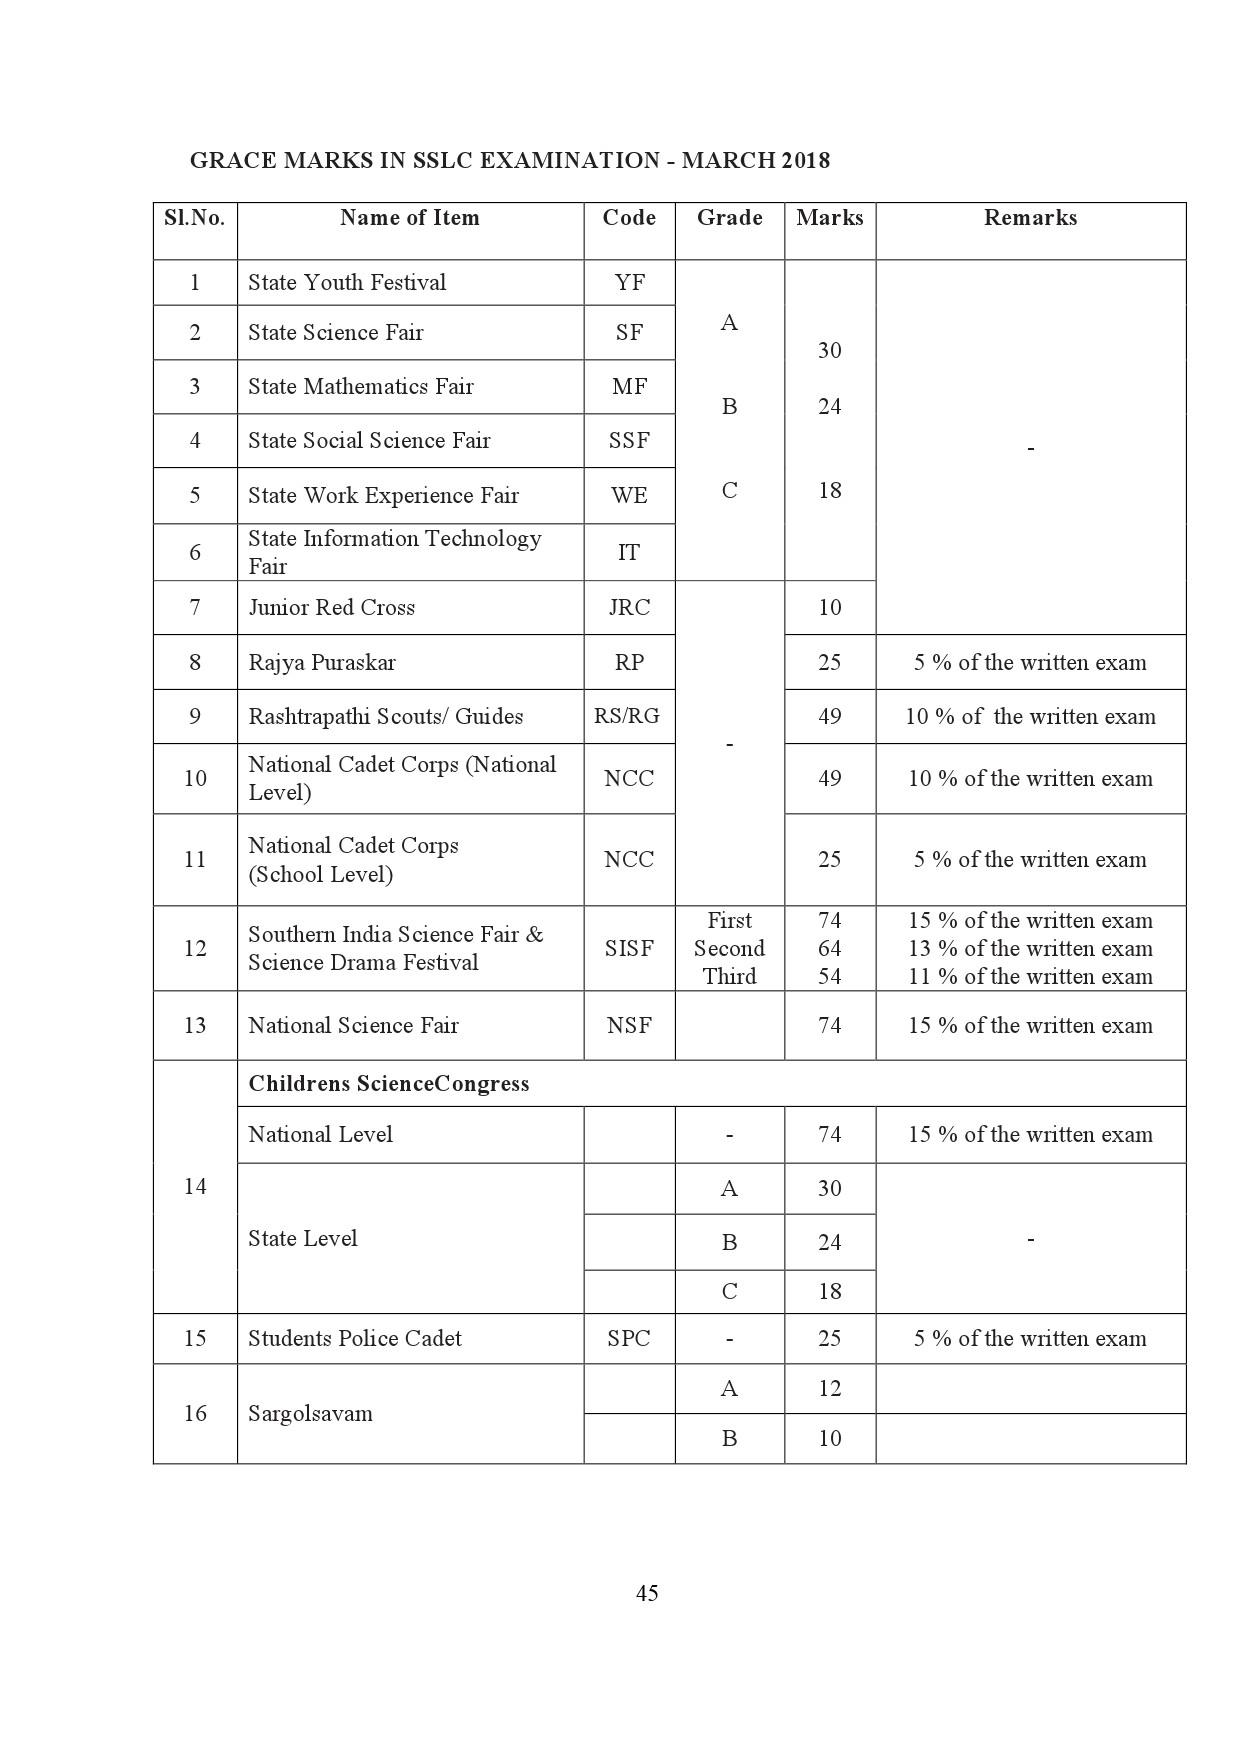 Kerala SSLC Exam Result 2019 - Notification Image 45